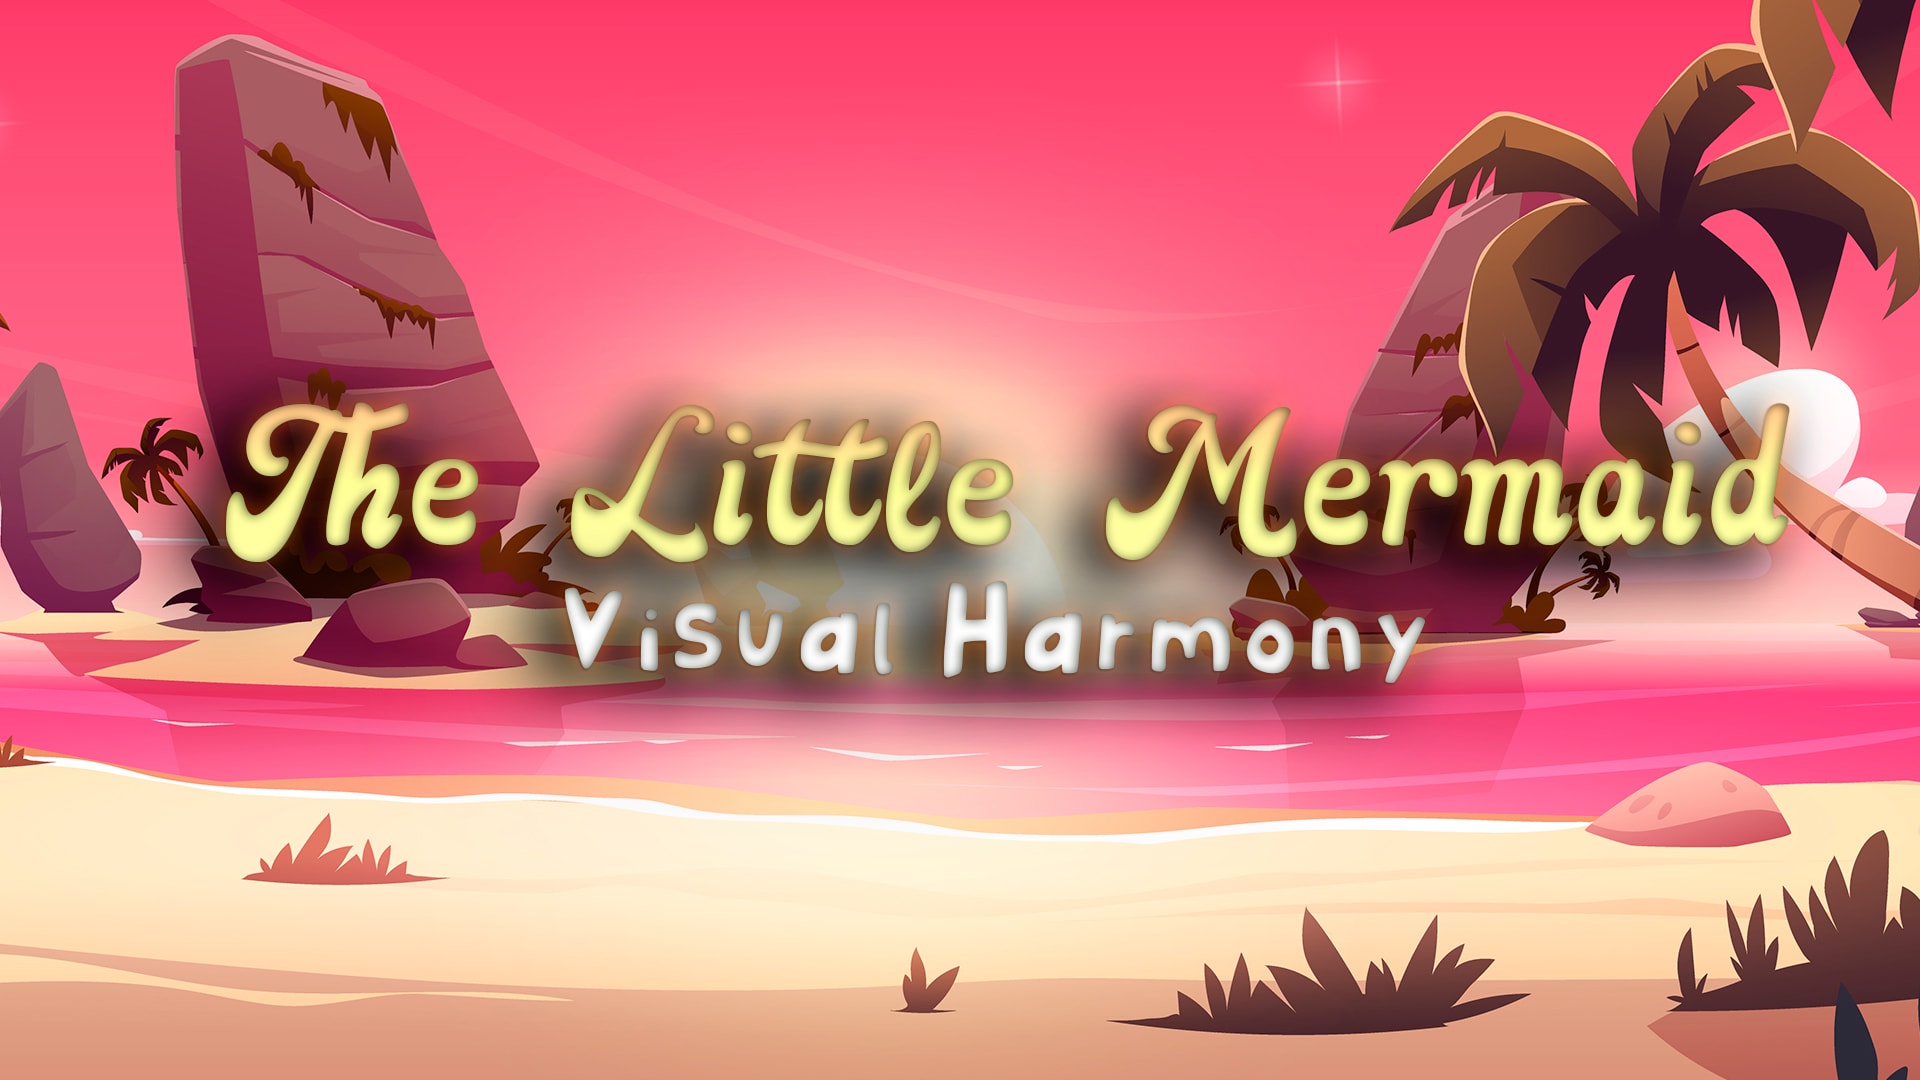 The Little Mermaid: Visual Harmony